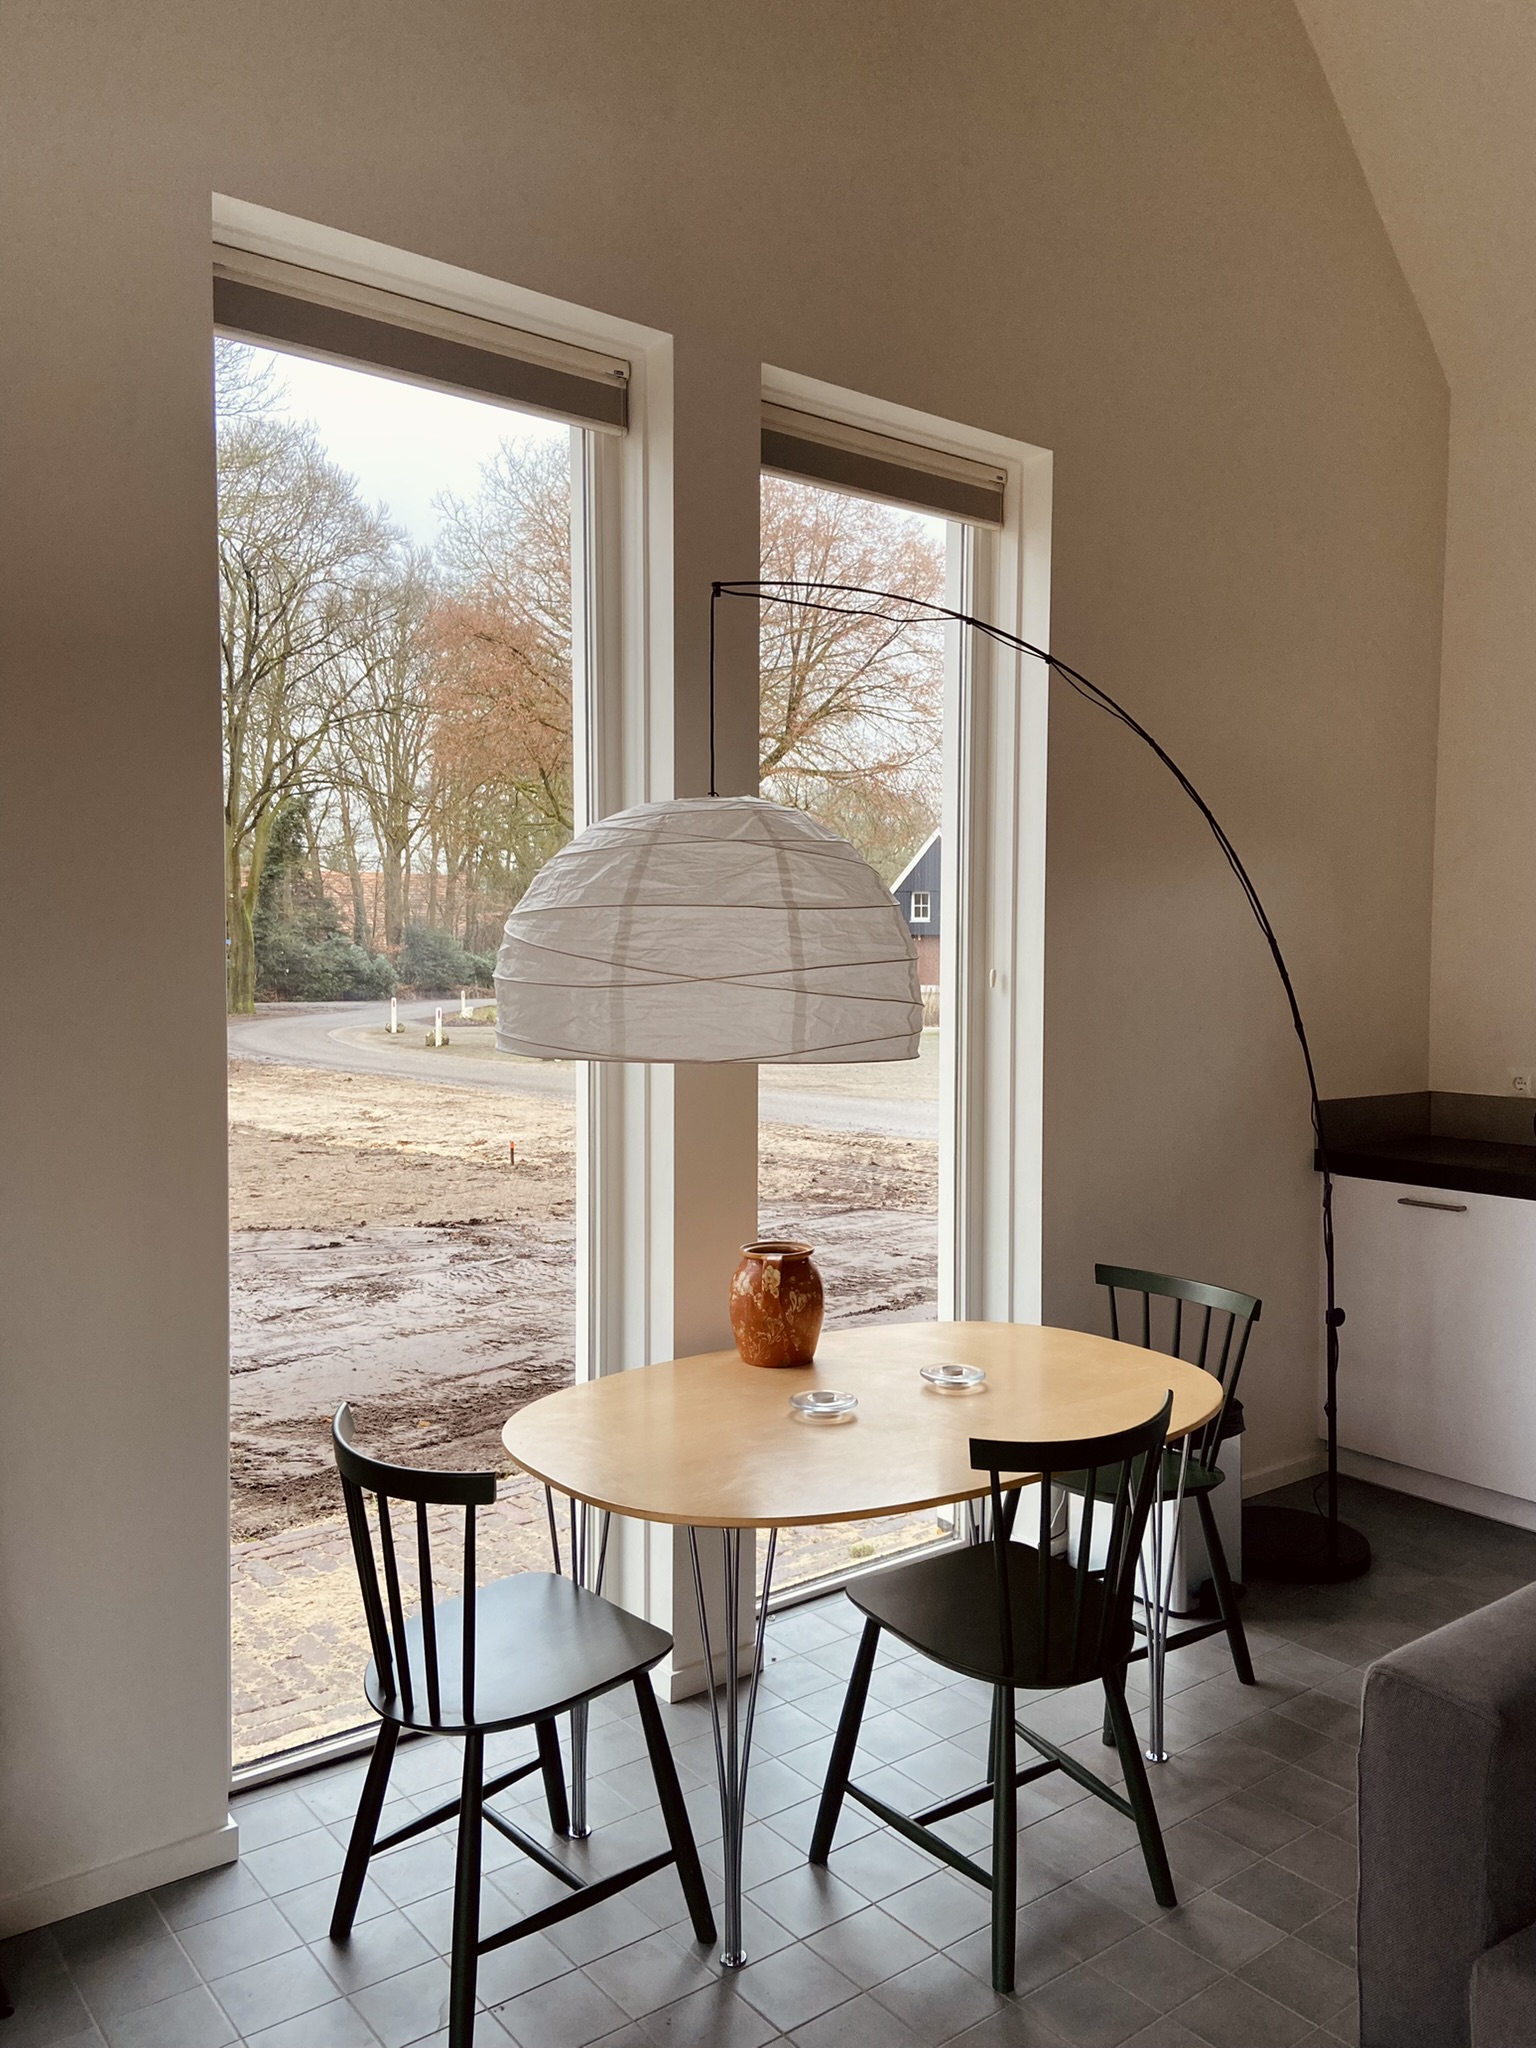 Vakantiehuis Erve Dinkelhorst in Twente - Comfortabele woning en atelier